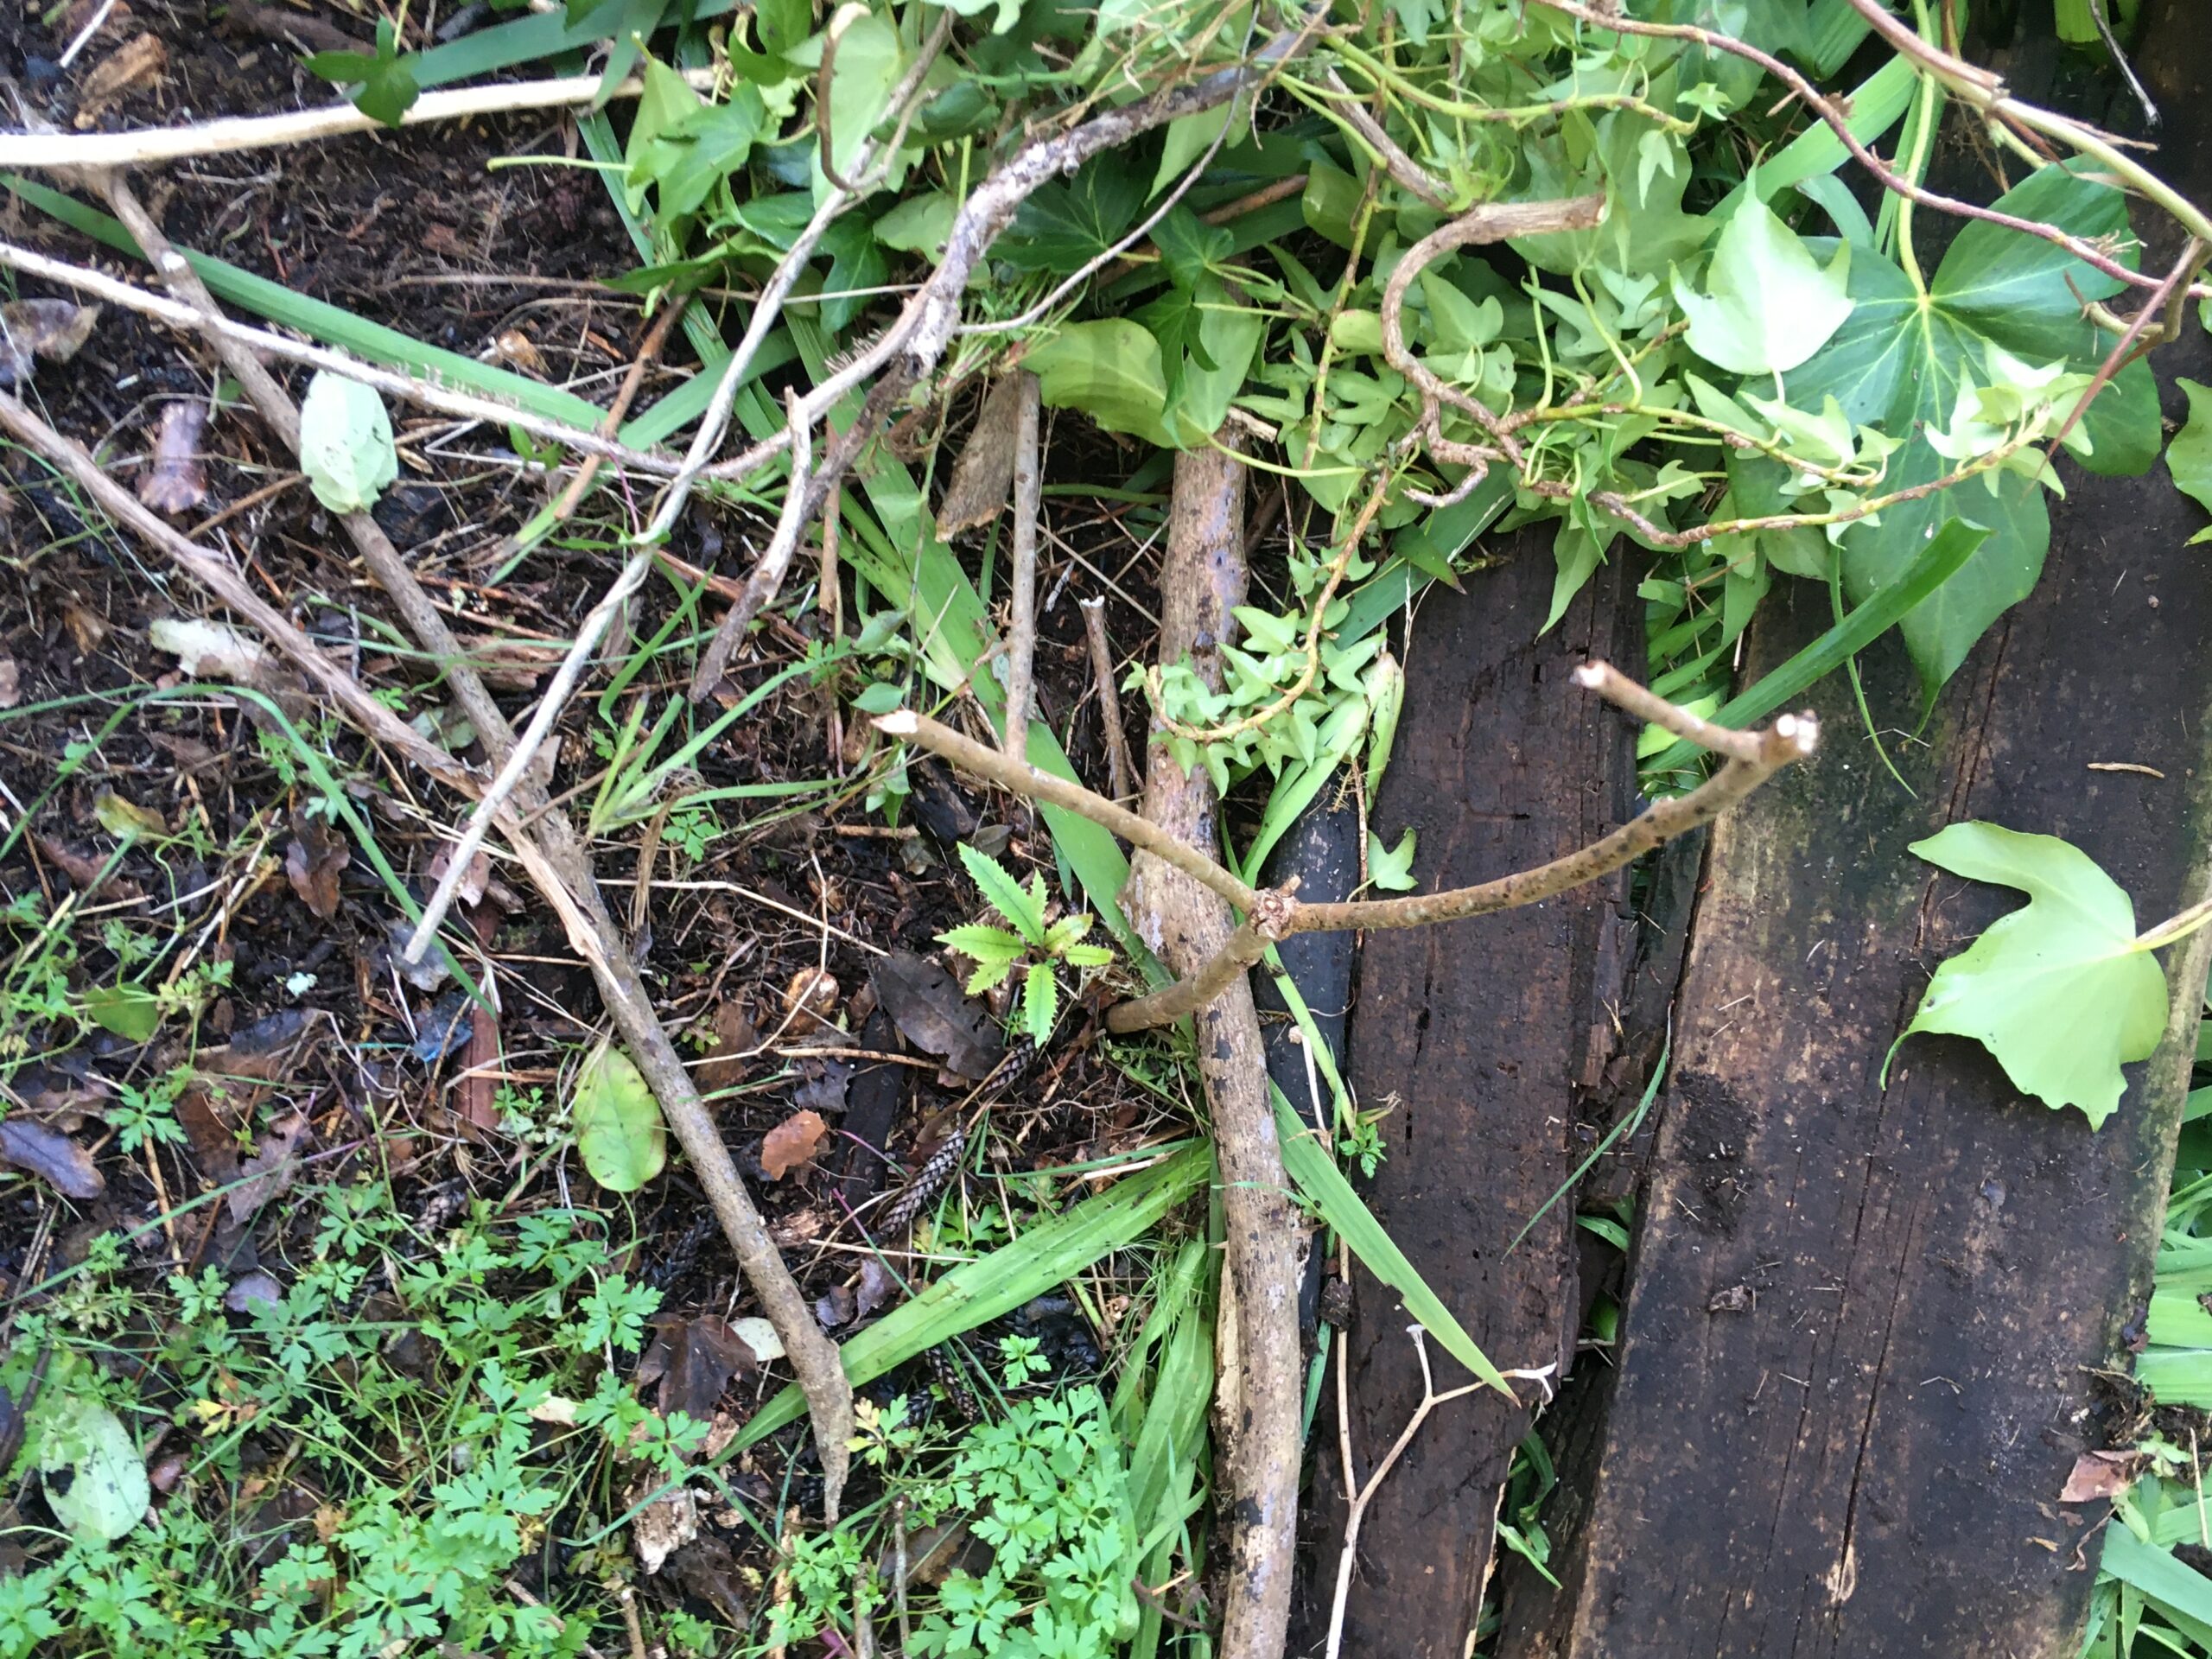 wild rewarewa seedling among cut ivy under Norfolk pine